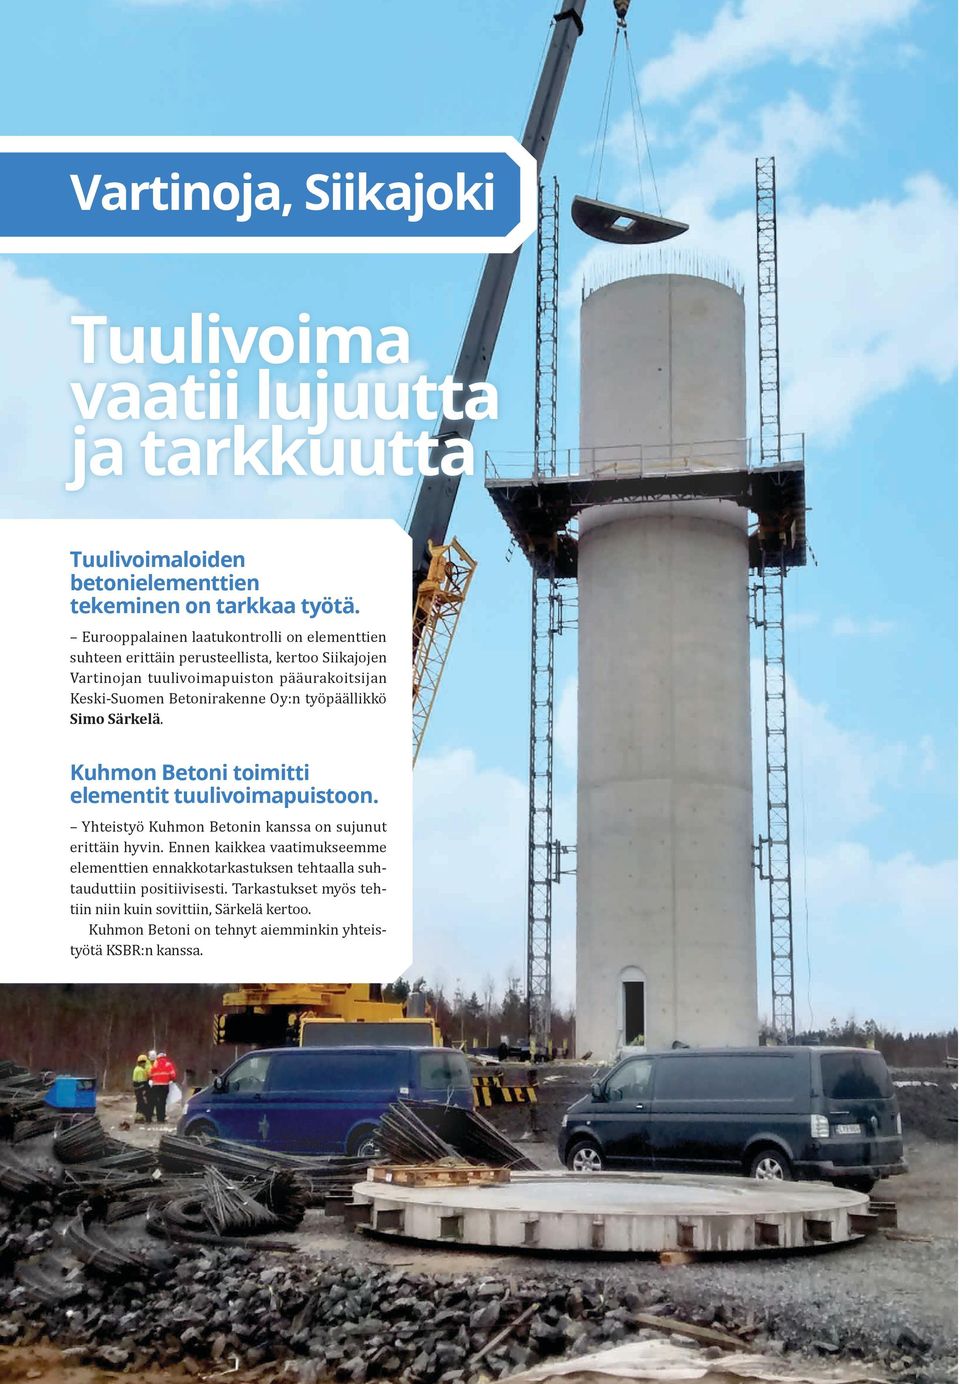 Oy:n työpäällikkö Simo Särkelä. Kuhmon Betoni toimitti elementit tuulivoimapuistoon. Yhteistyö Kuhmon Betonin kanssa on sujunut erittäin hyvin.